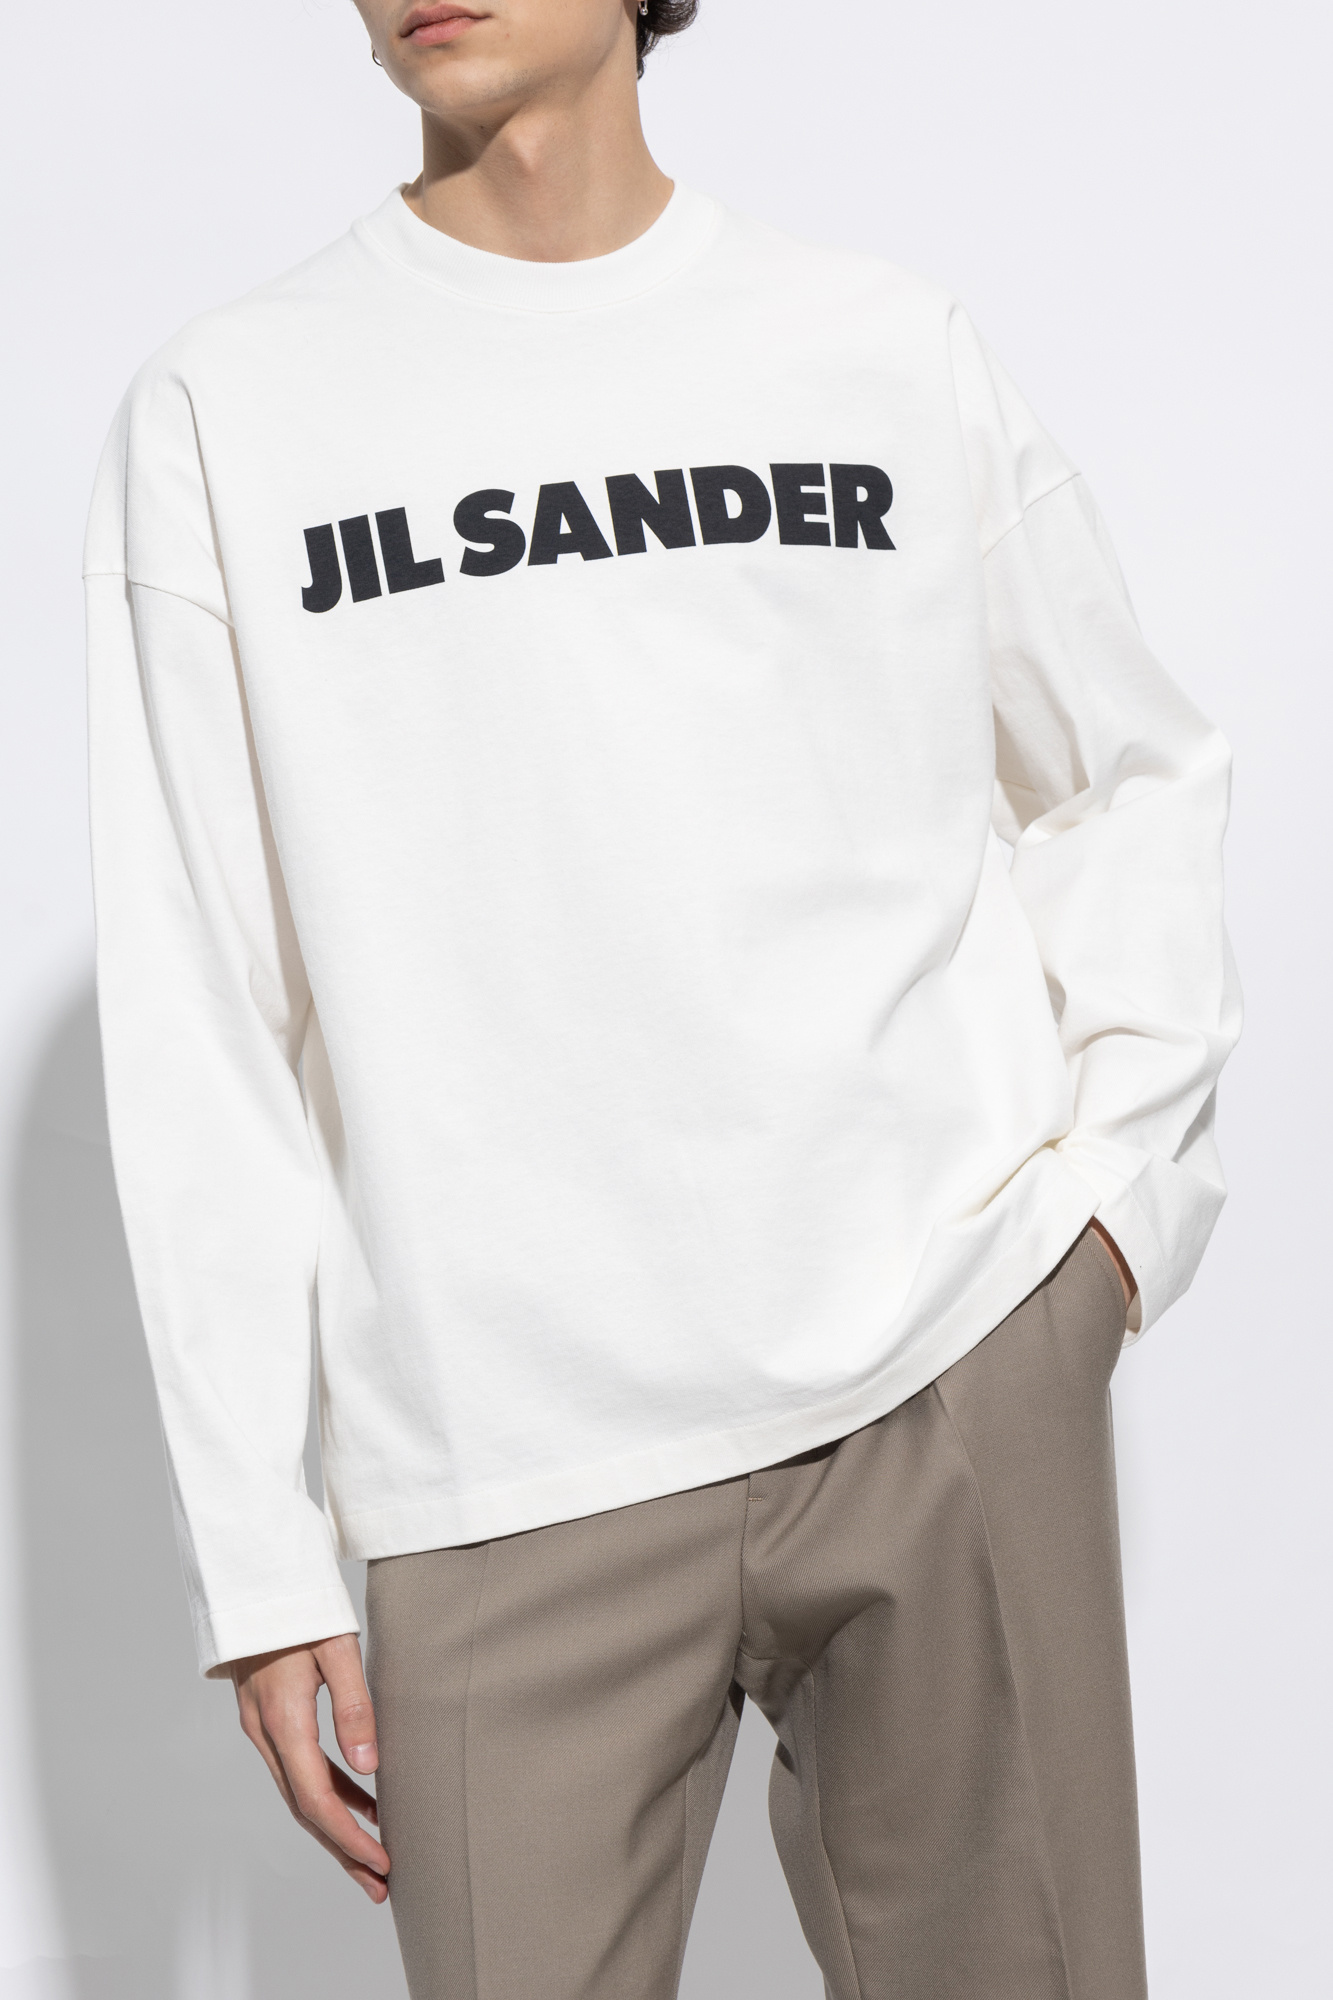 JIL SANDER ruffled enter jil sander 1 skirt